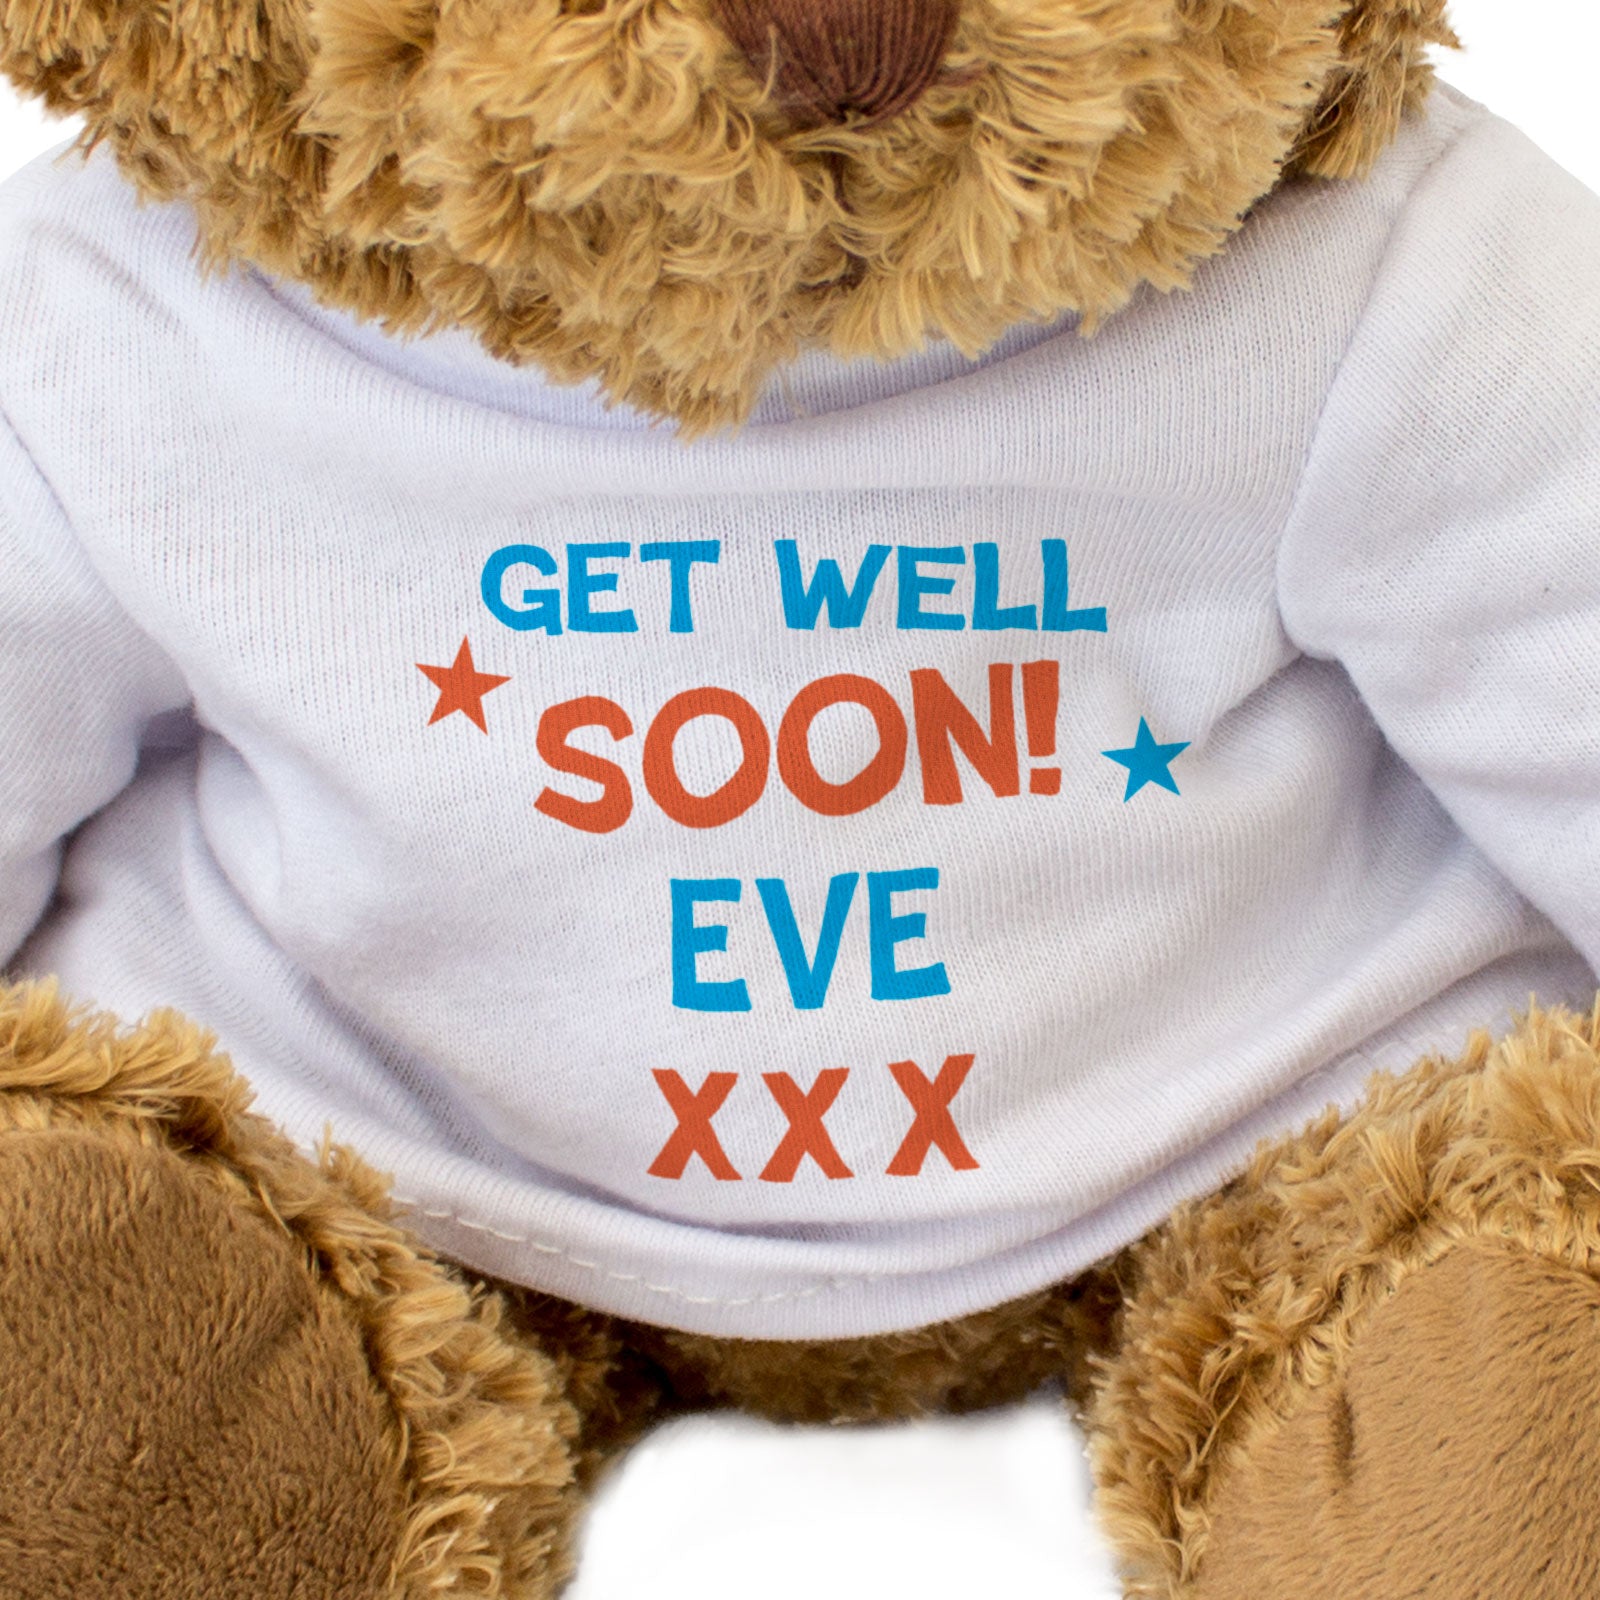 Get Well Soon Eve - Teddy Bear